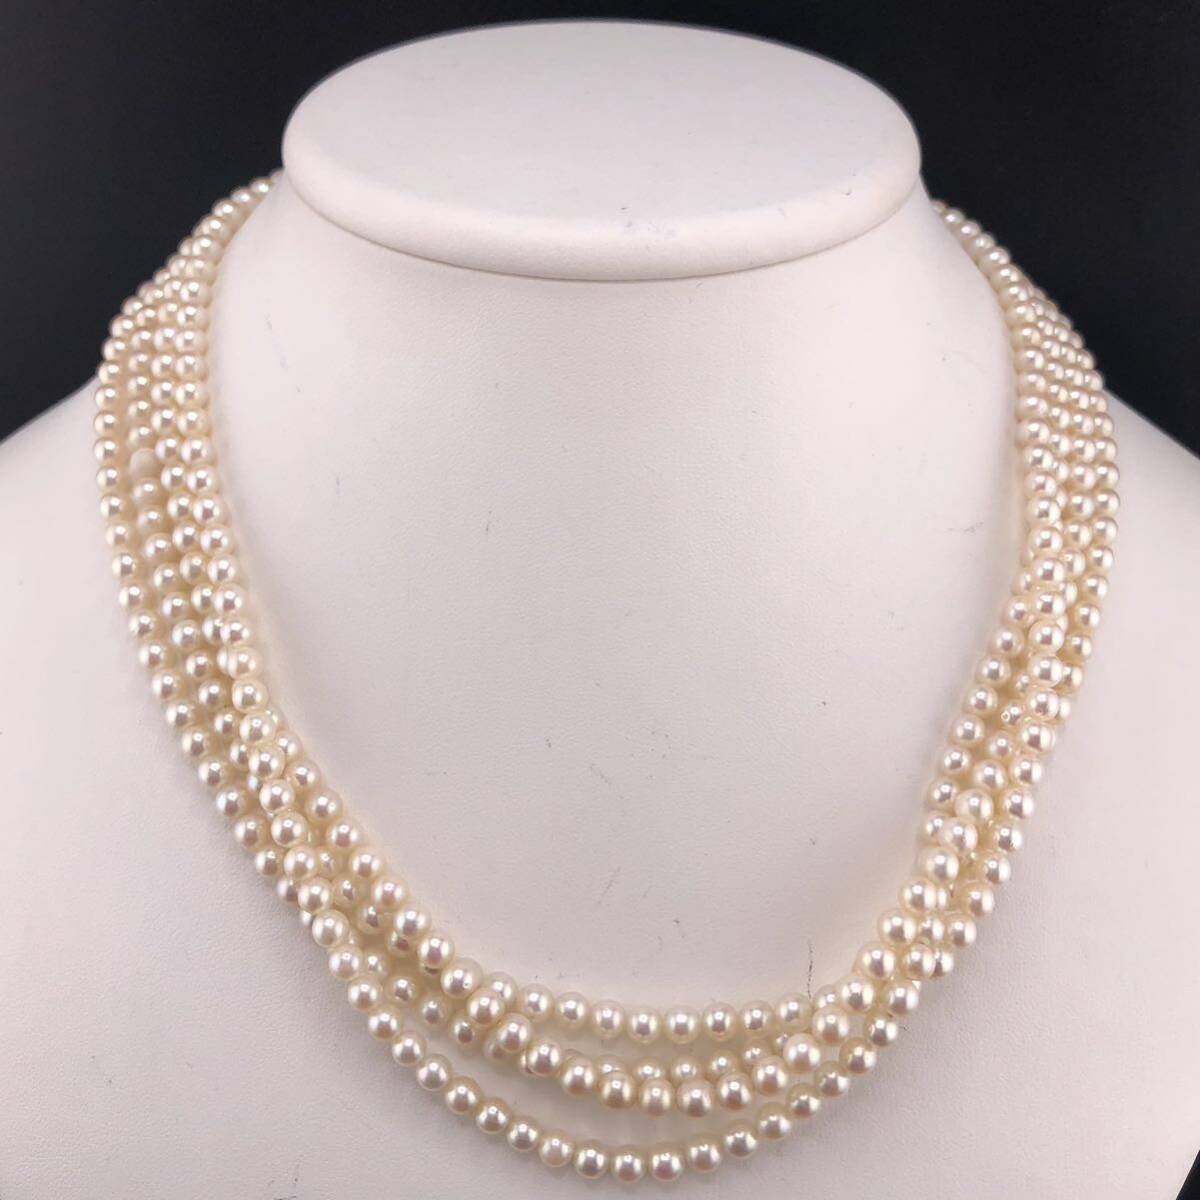 E04-1030 アコヤロングベビーパールネックレス 4.5mm~5.0mm 約 186cm 63.2g ( アコヤ真珠 ベビー ロング Pearl necklace SILVER )の画像1